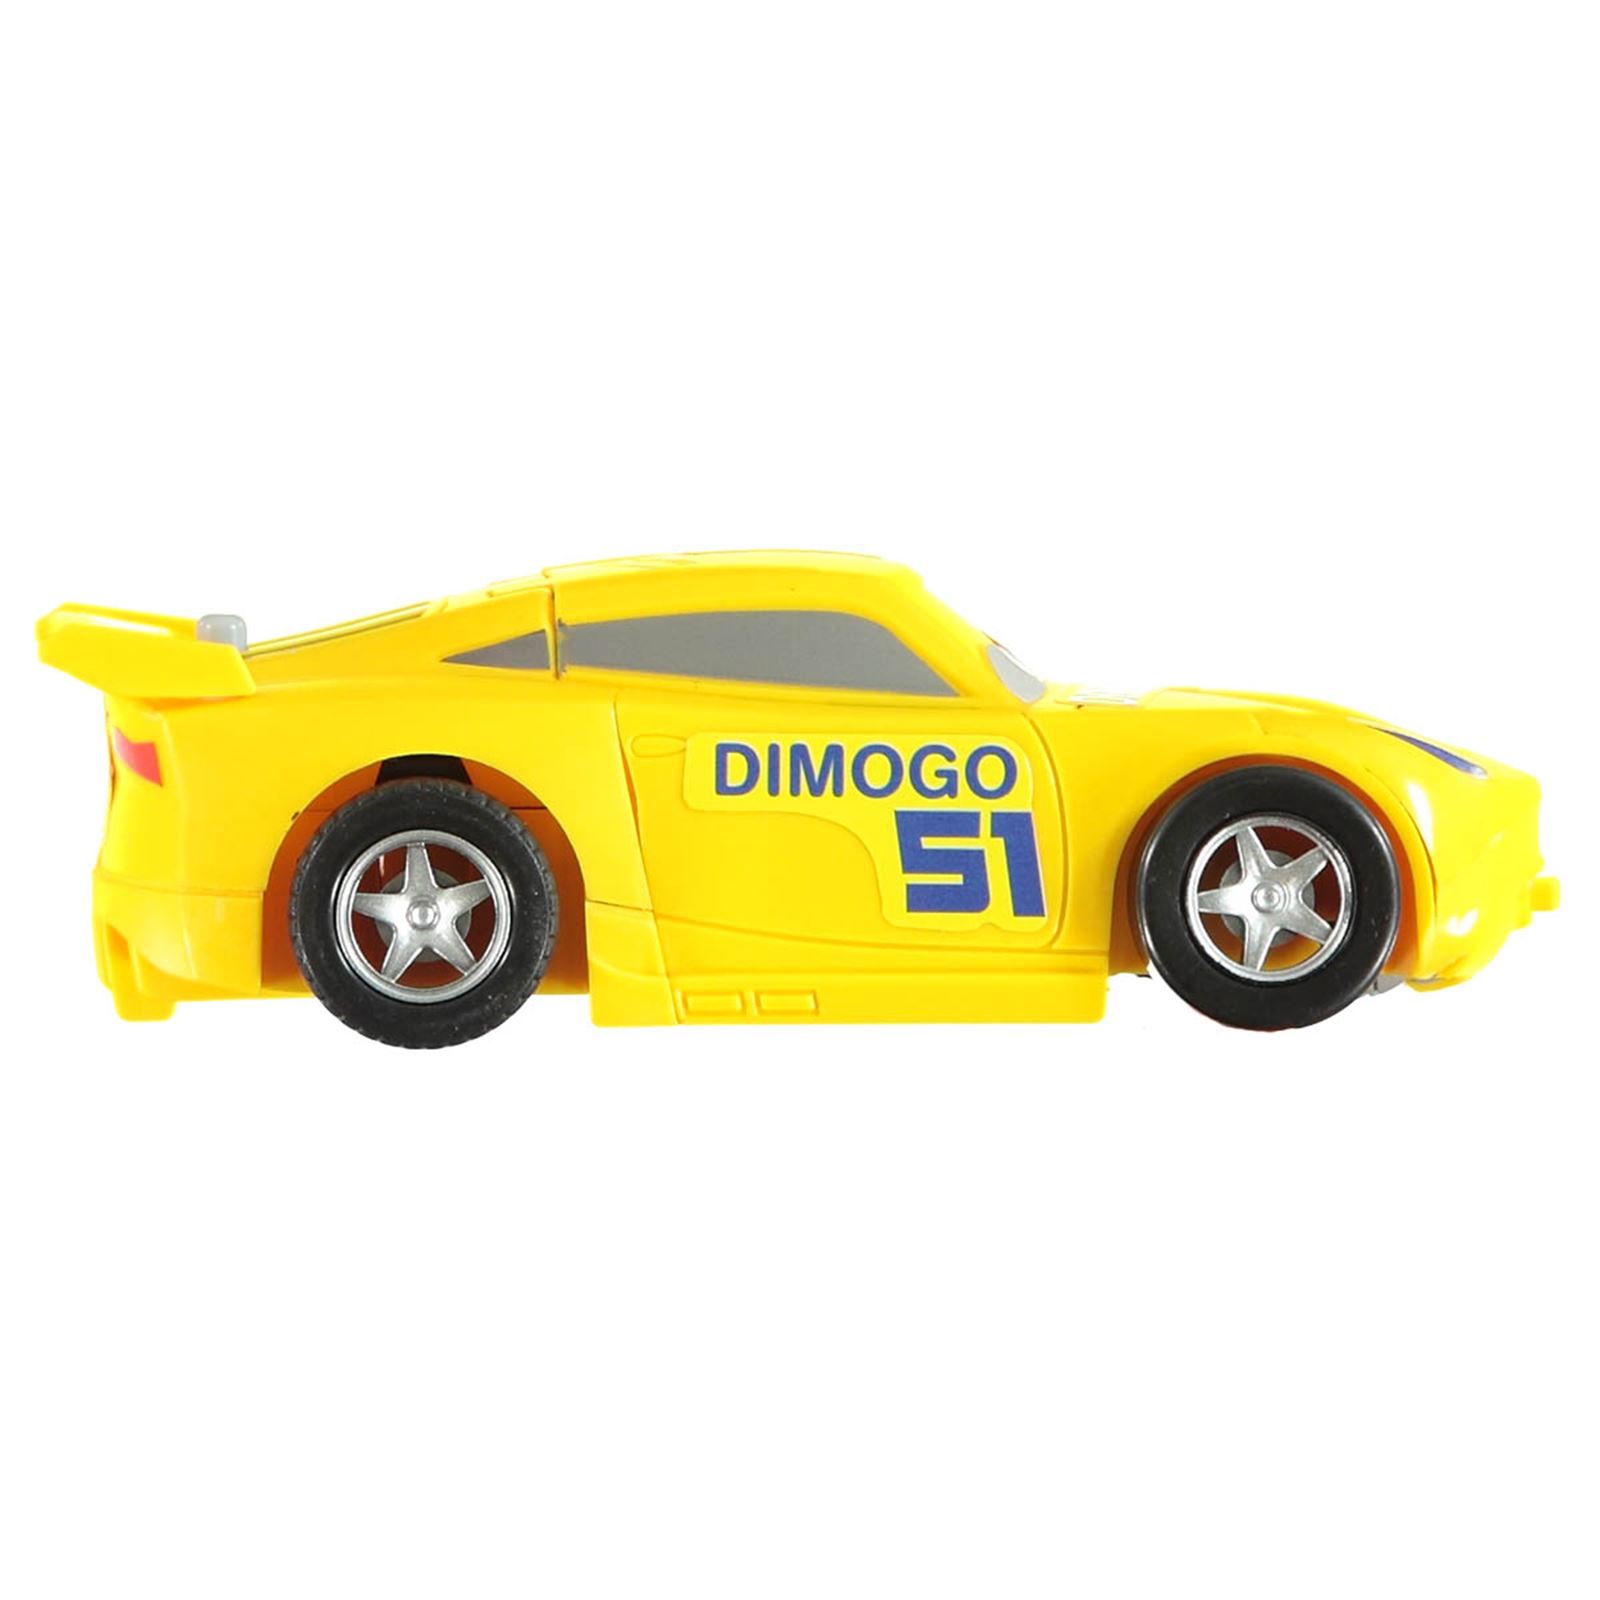 Can Oyuncak Robot Araba 13 cm Sarı